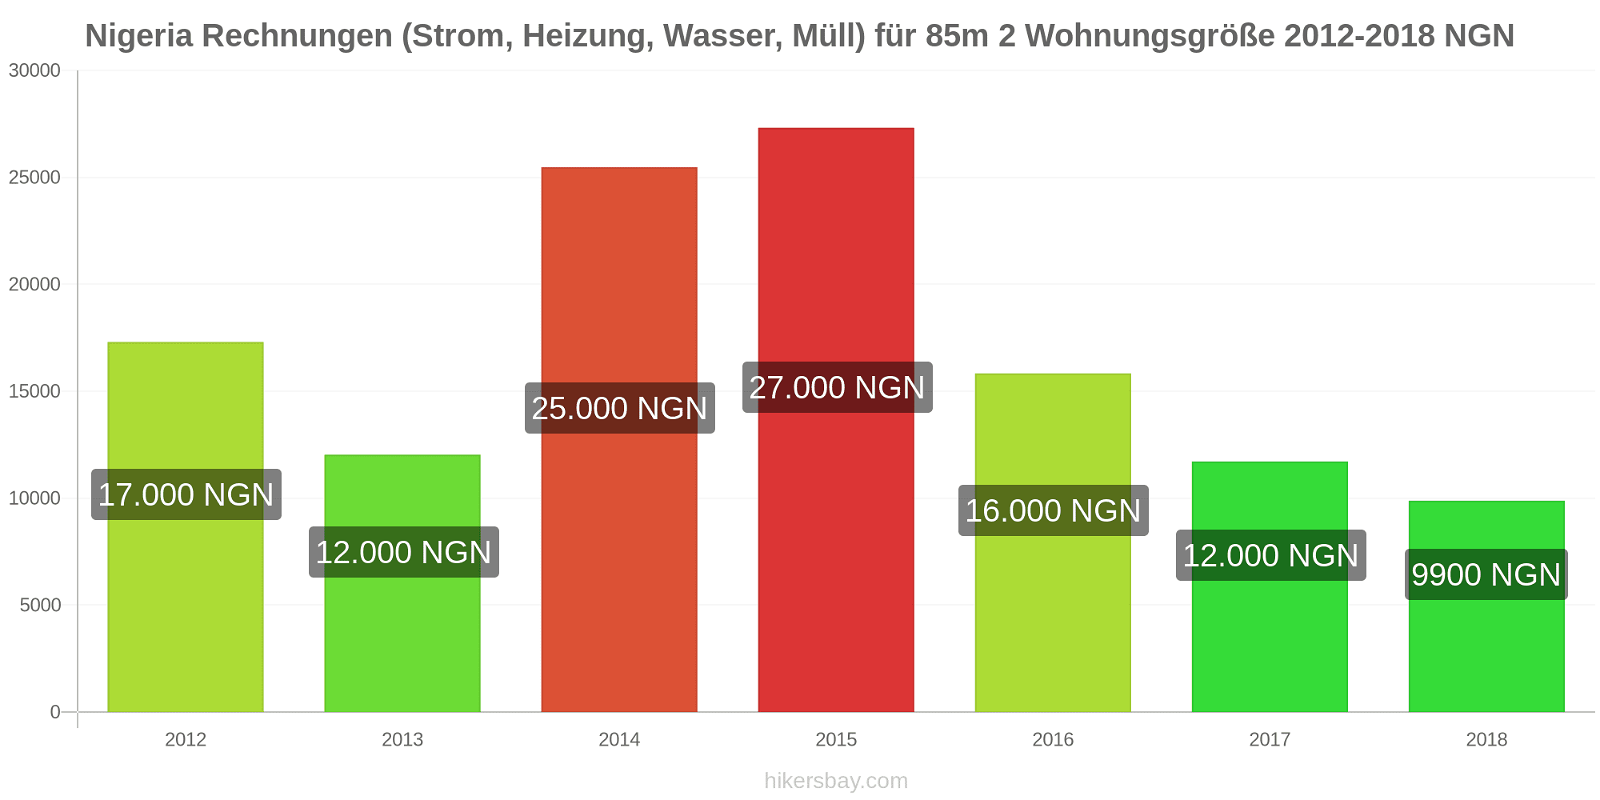 Nigeria Preisänderungen Kosten (Strom, Heizung, Wasser, Müll) für eine 85m2 große Wohnung hikersbay.com